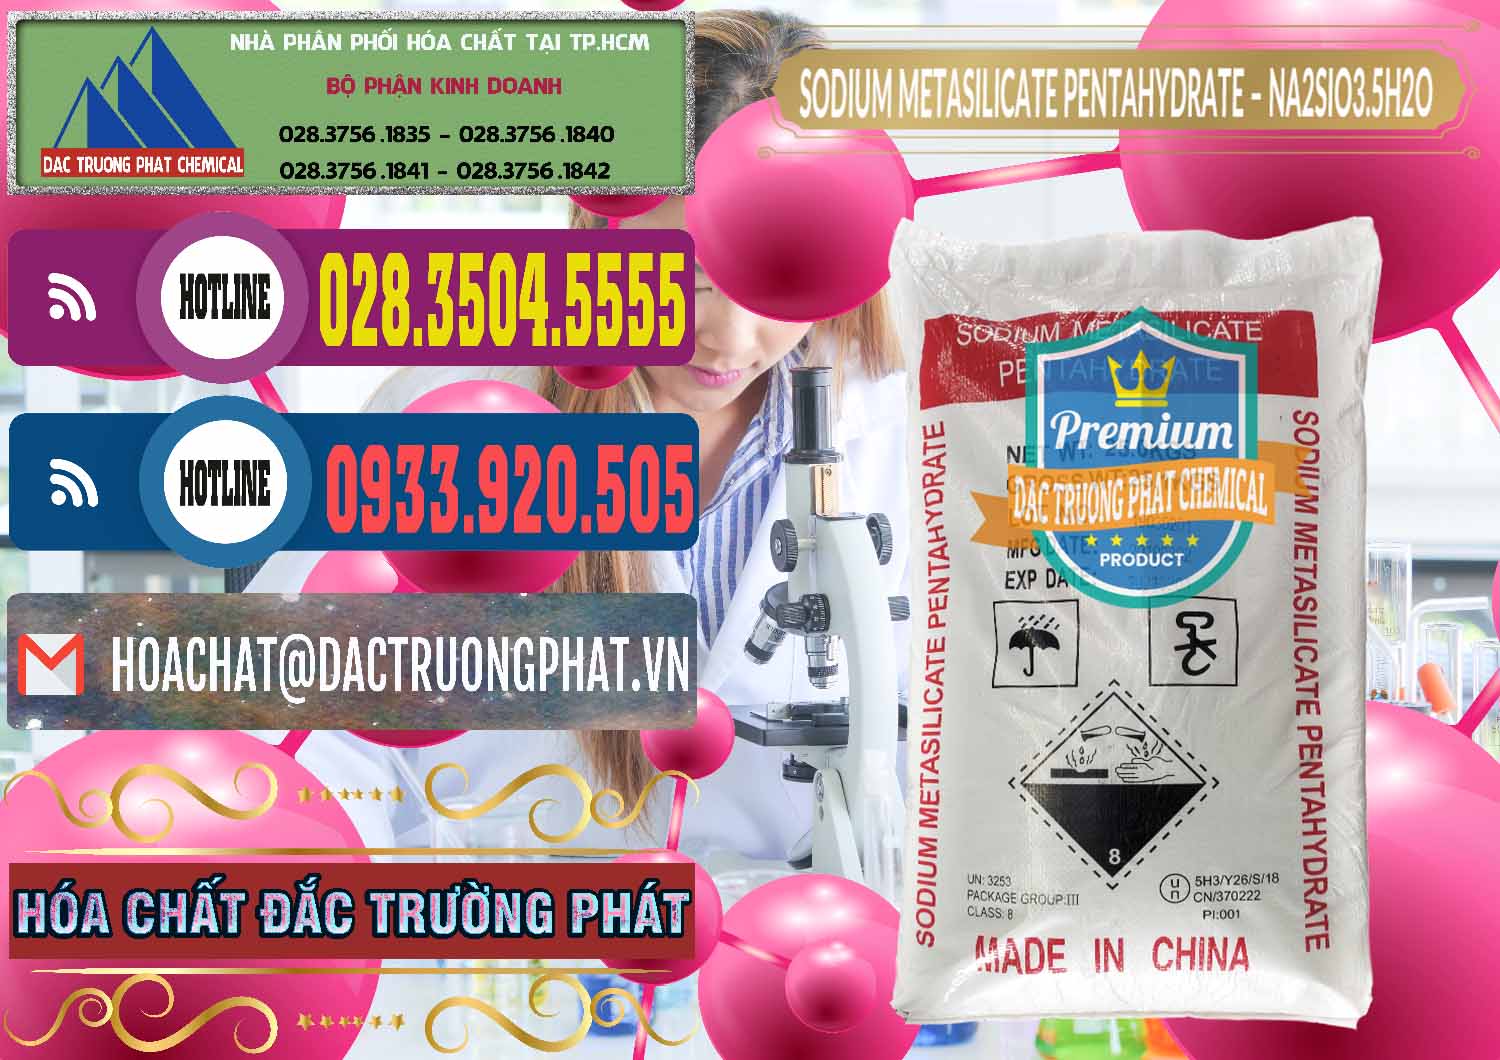 Nơi cung cấp & bán Sodium Metasilicate Pentahydrate – Silicate Bột Trung Quốc China - 0147 - Cung ứng _ phân phối hóa chất tại TP.HCM - muabanhoachat.com.vn